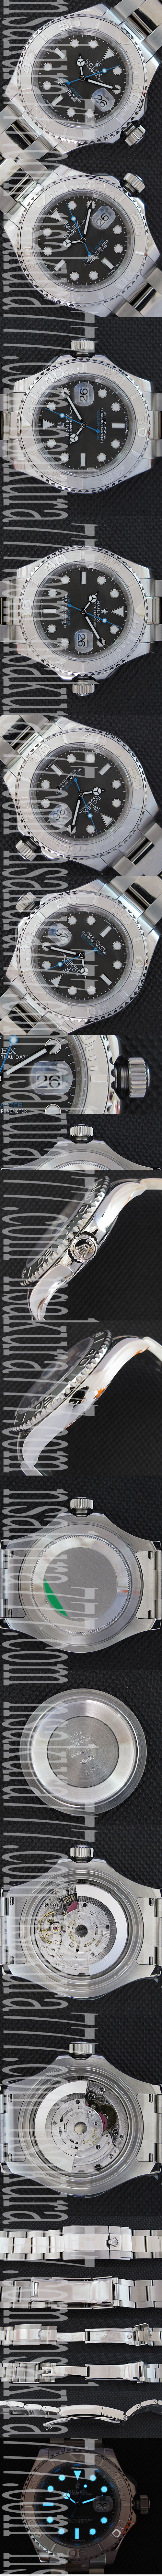 スーパーコピー時計ロレックス ヨットマスタ Rolex 3135 ムーブメント搭載! (JF工場) - ウインドウを閉じる